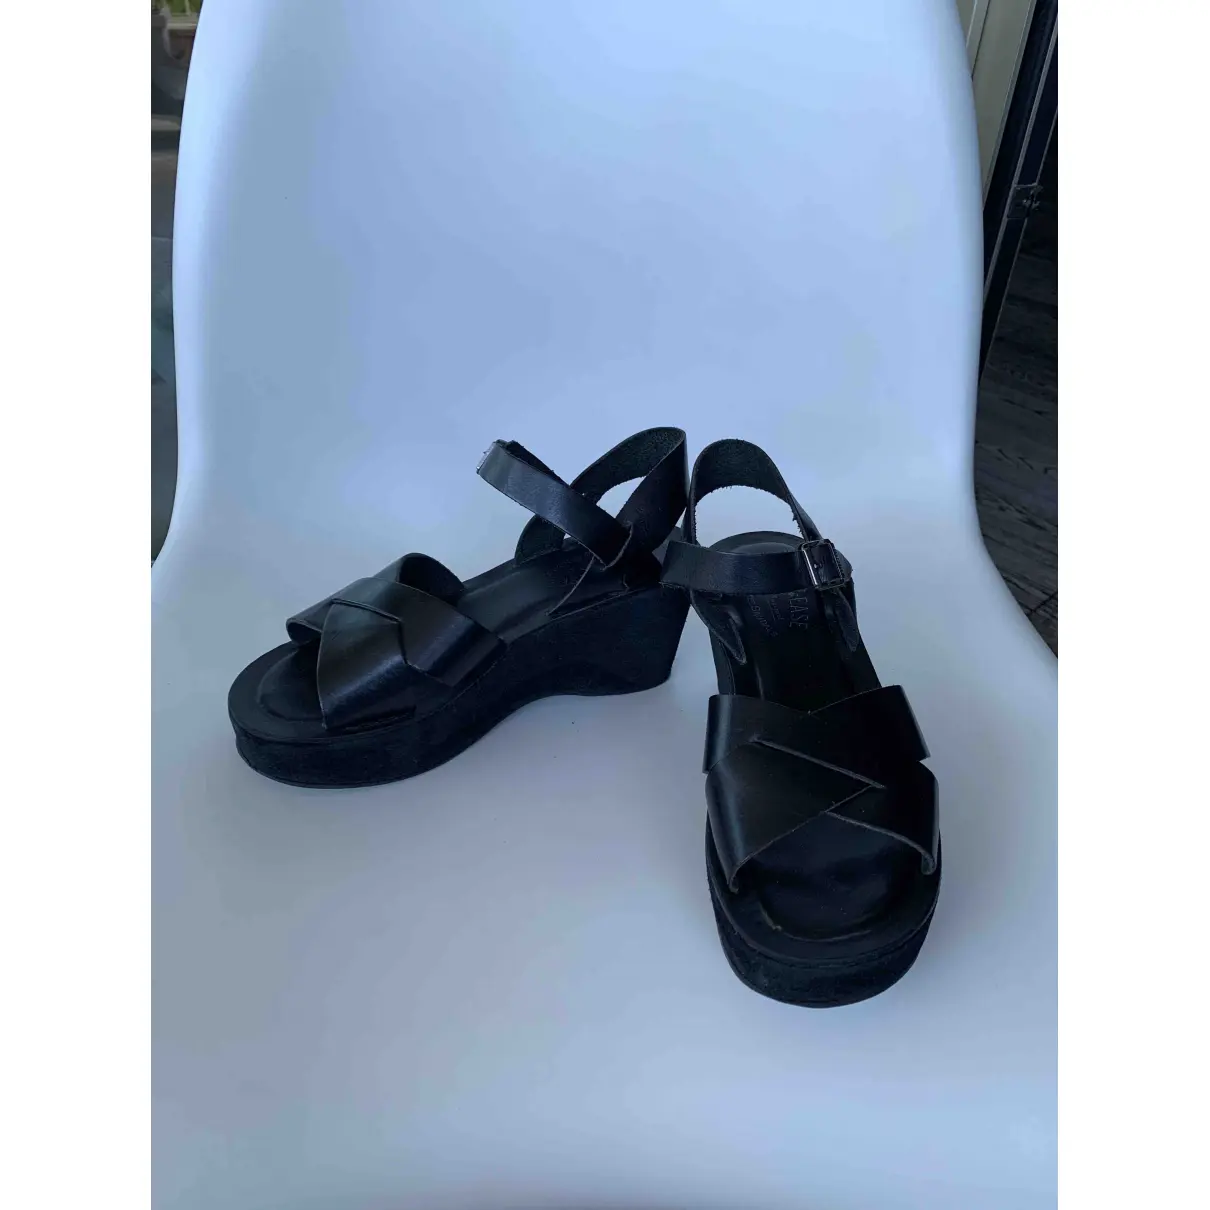 Buy Kork Ease Leather sandals online